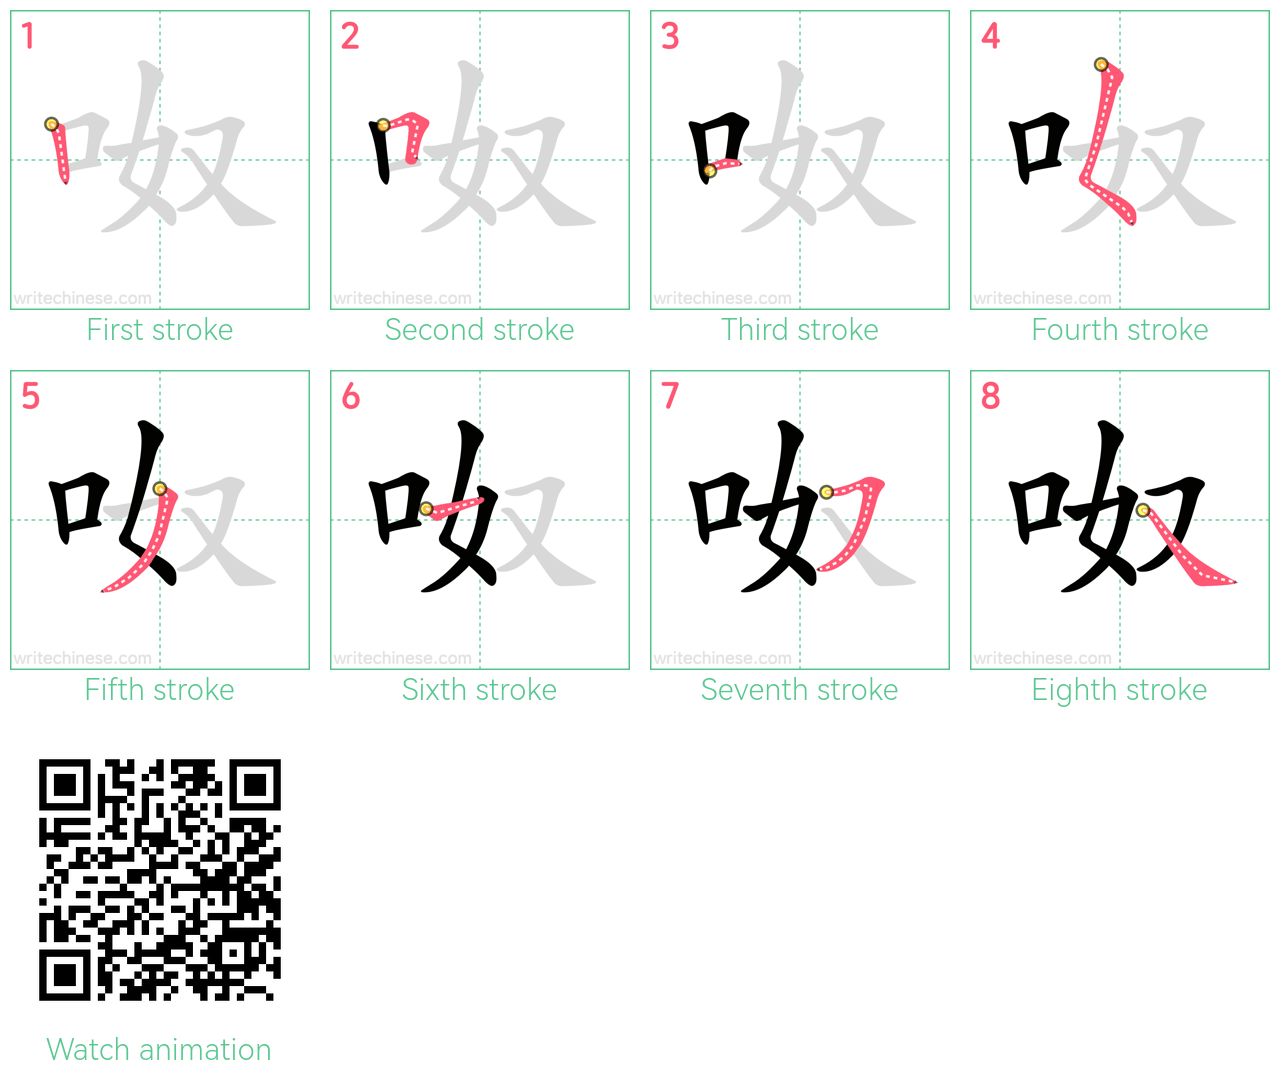 呶 step-by-step stroke order diagrams